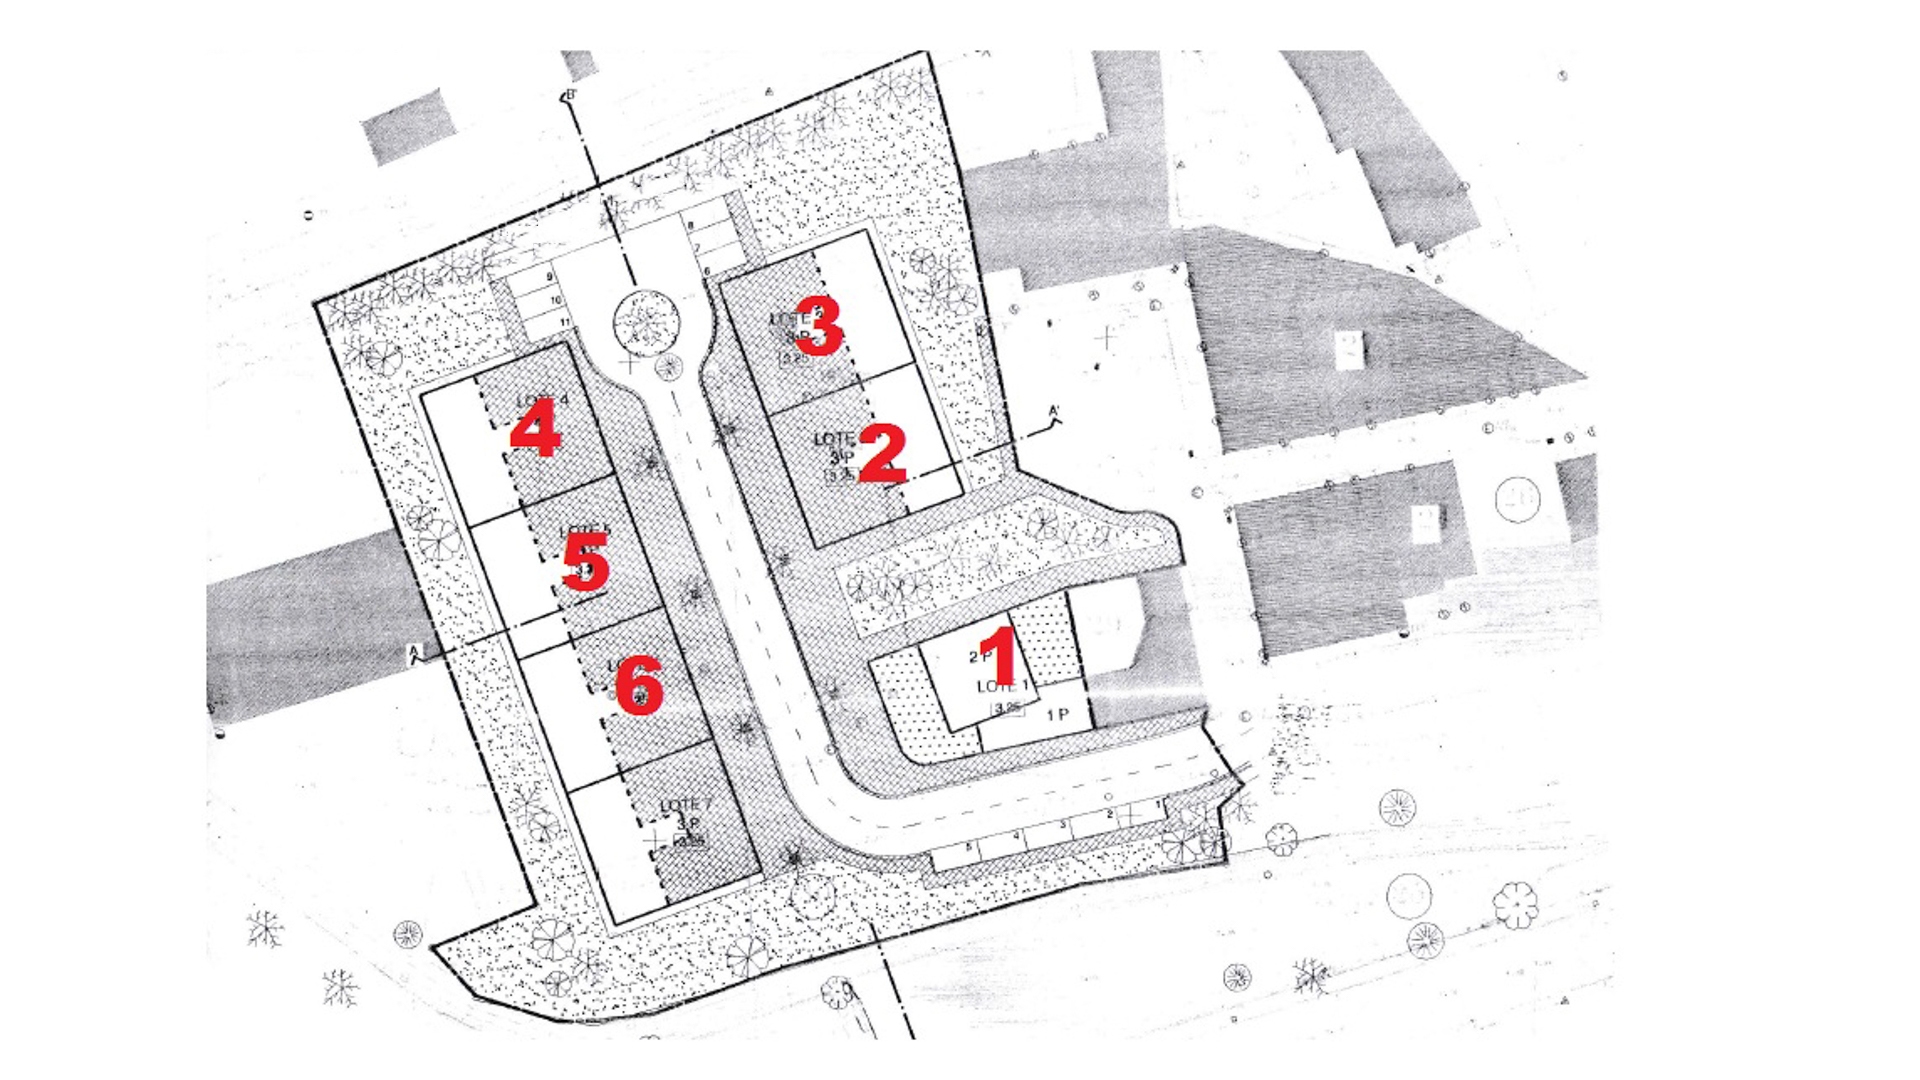 Projeto de Desenvolvimento Urbano no Parchal | VM1316 6 lotes vizinhos com capacidade para construir uma moradia unifamiliar de dois andares e 5 blocos de apartamentos com um total de 20 apartamentos individuais T2 e T3.